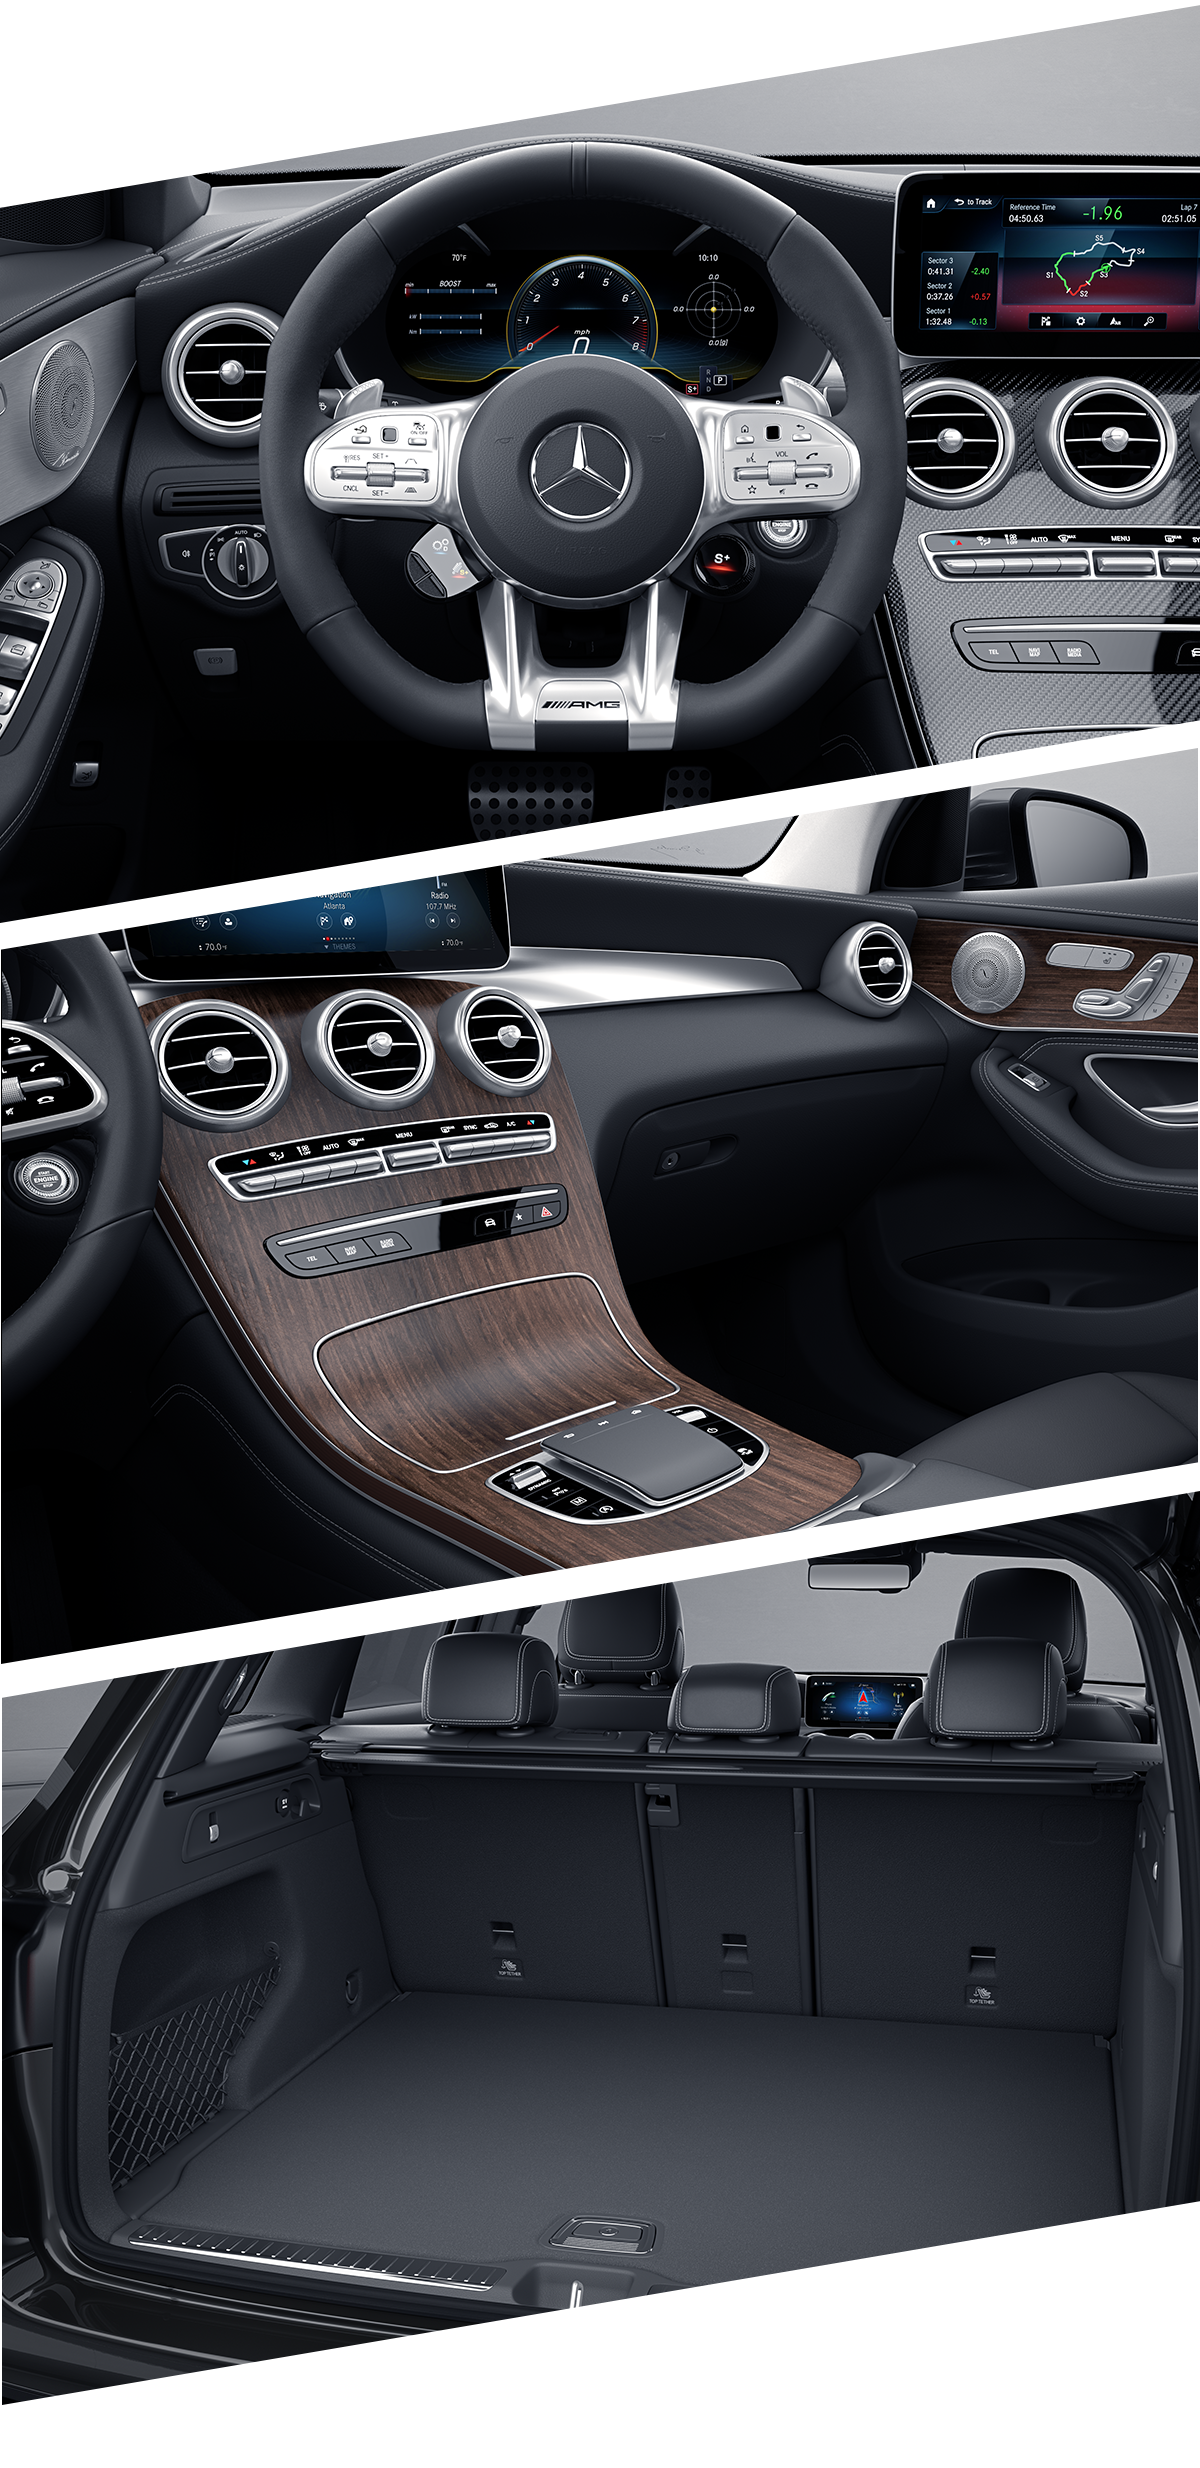 2022 Mercedes Benz GLC Interior